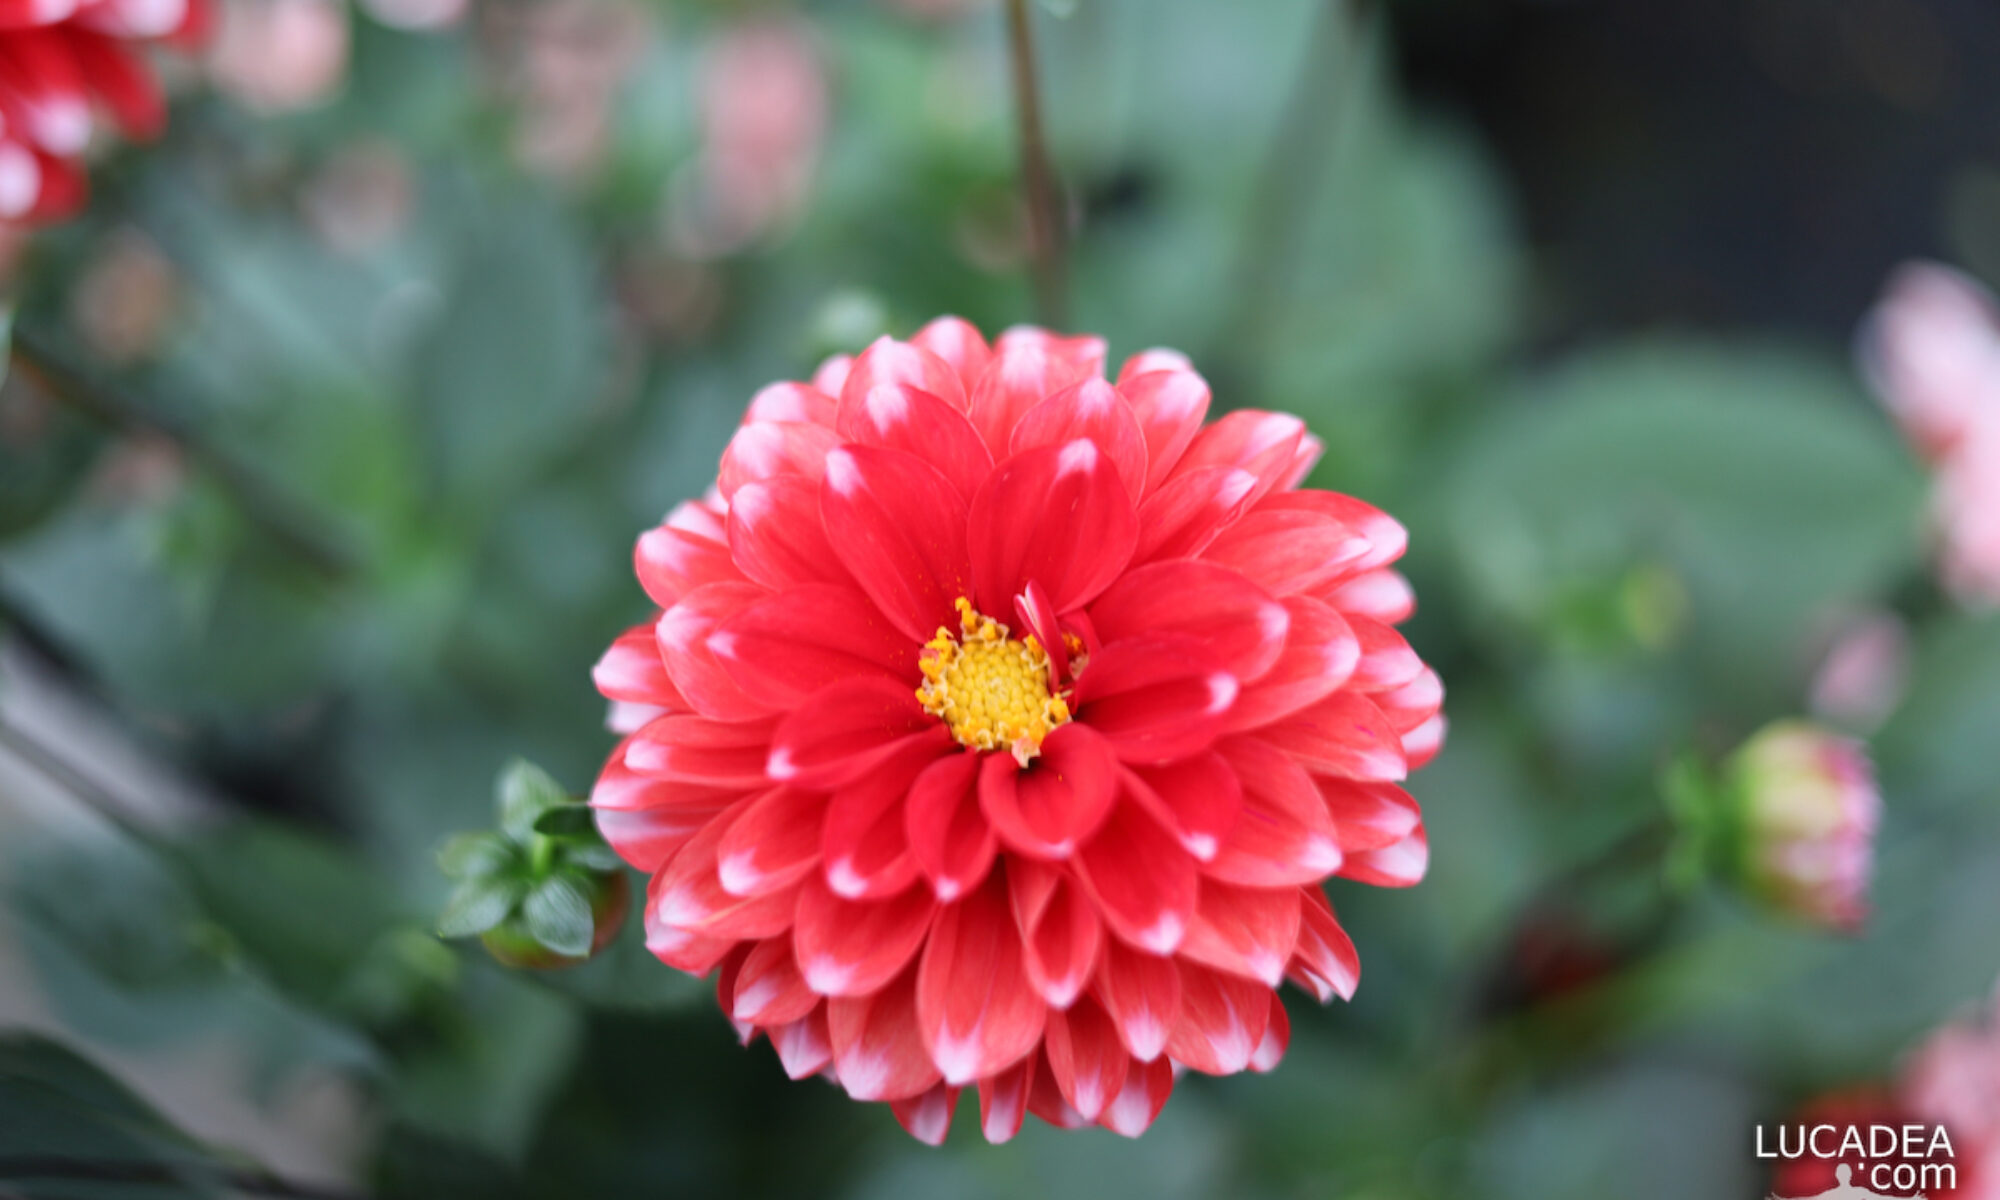 Il bel fiore rosso della Dahlia fotografato in un vivaio